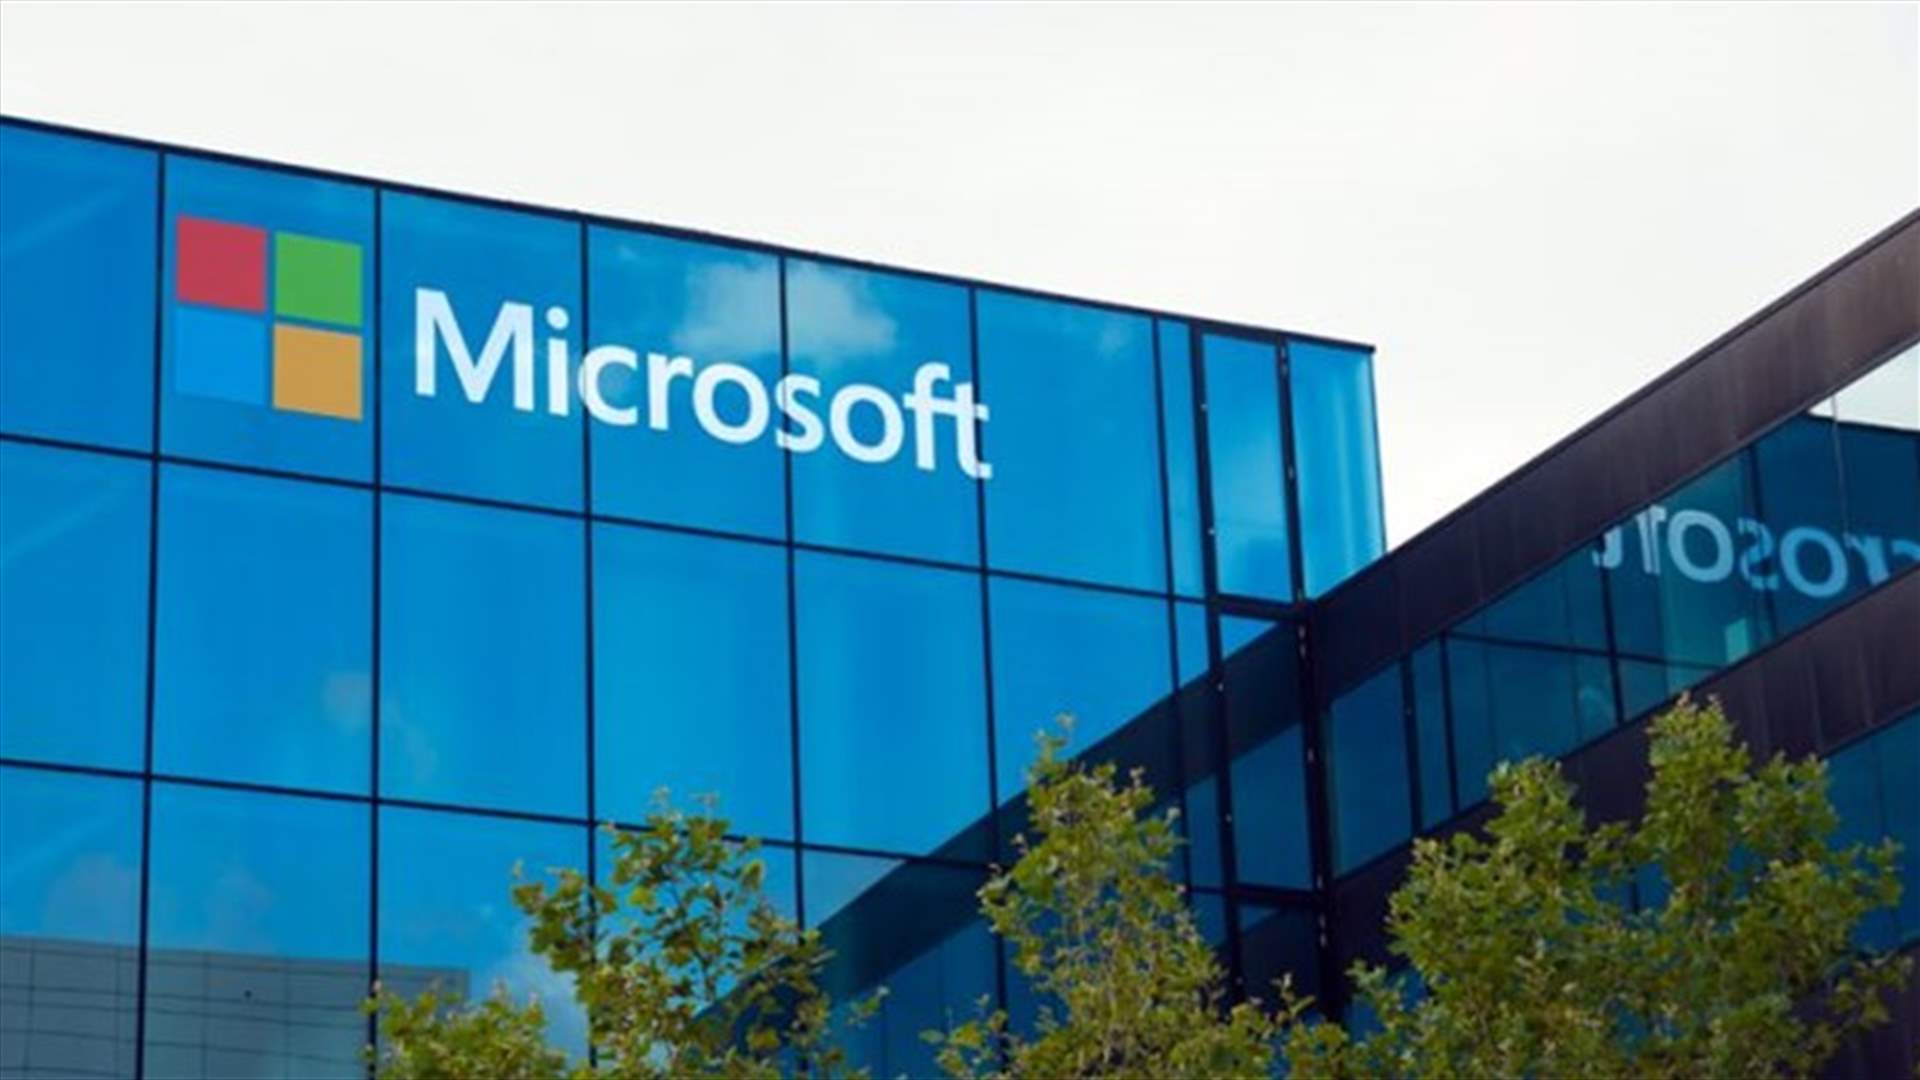 ميكروسوفت تنشئ أول مركز للبيانات في الشرق الأوسط